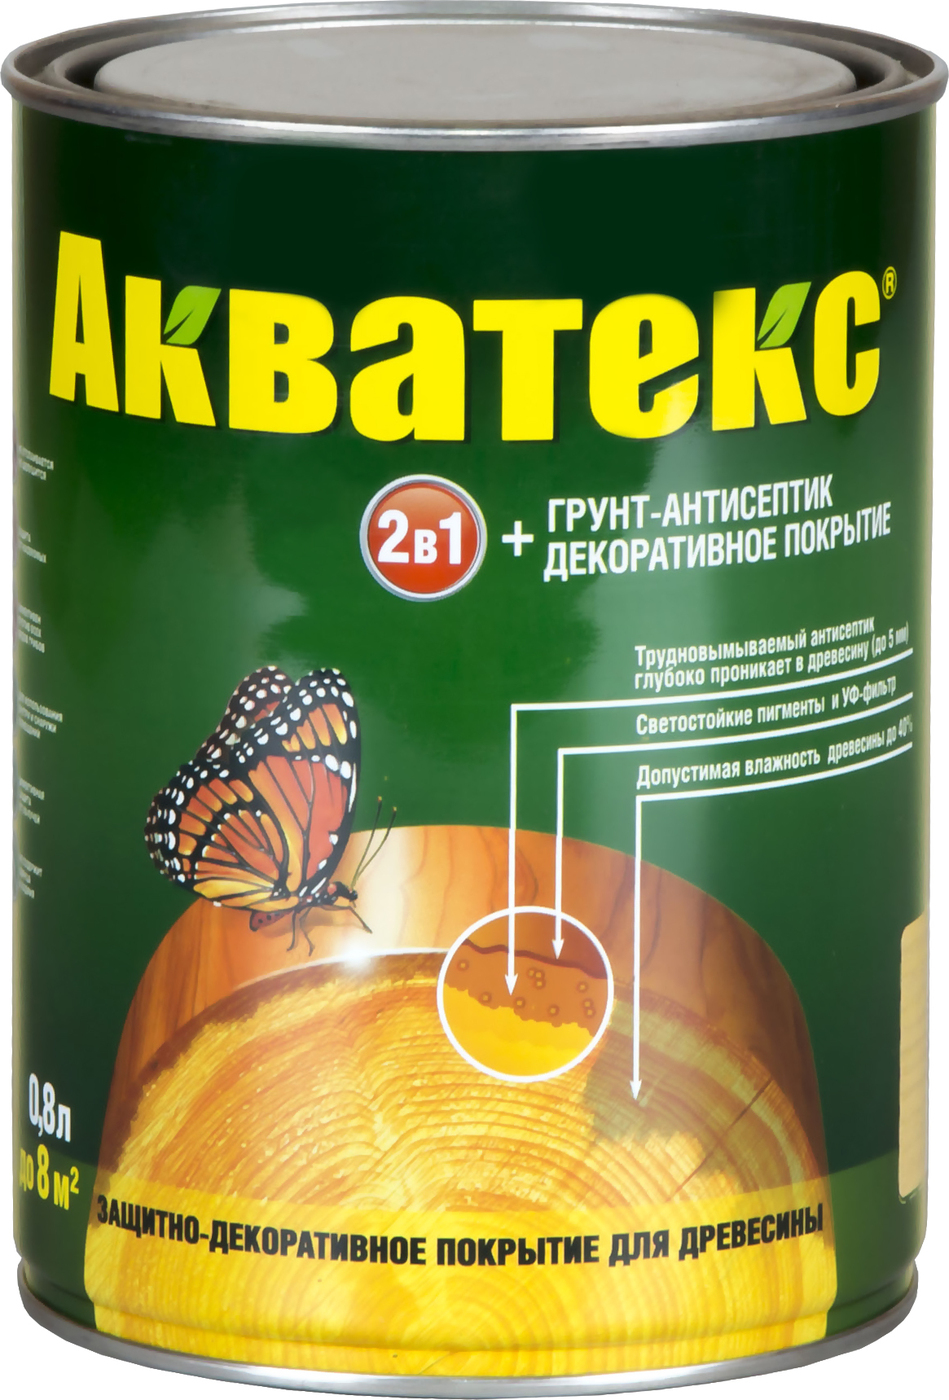 Защитно-декоративный состав для древесины АКВАТЕКС Акватекс, 0.8 л .